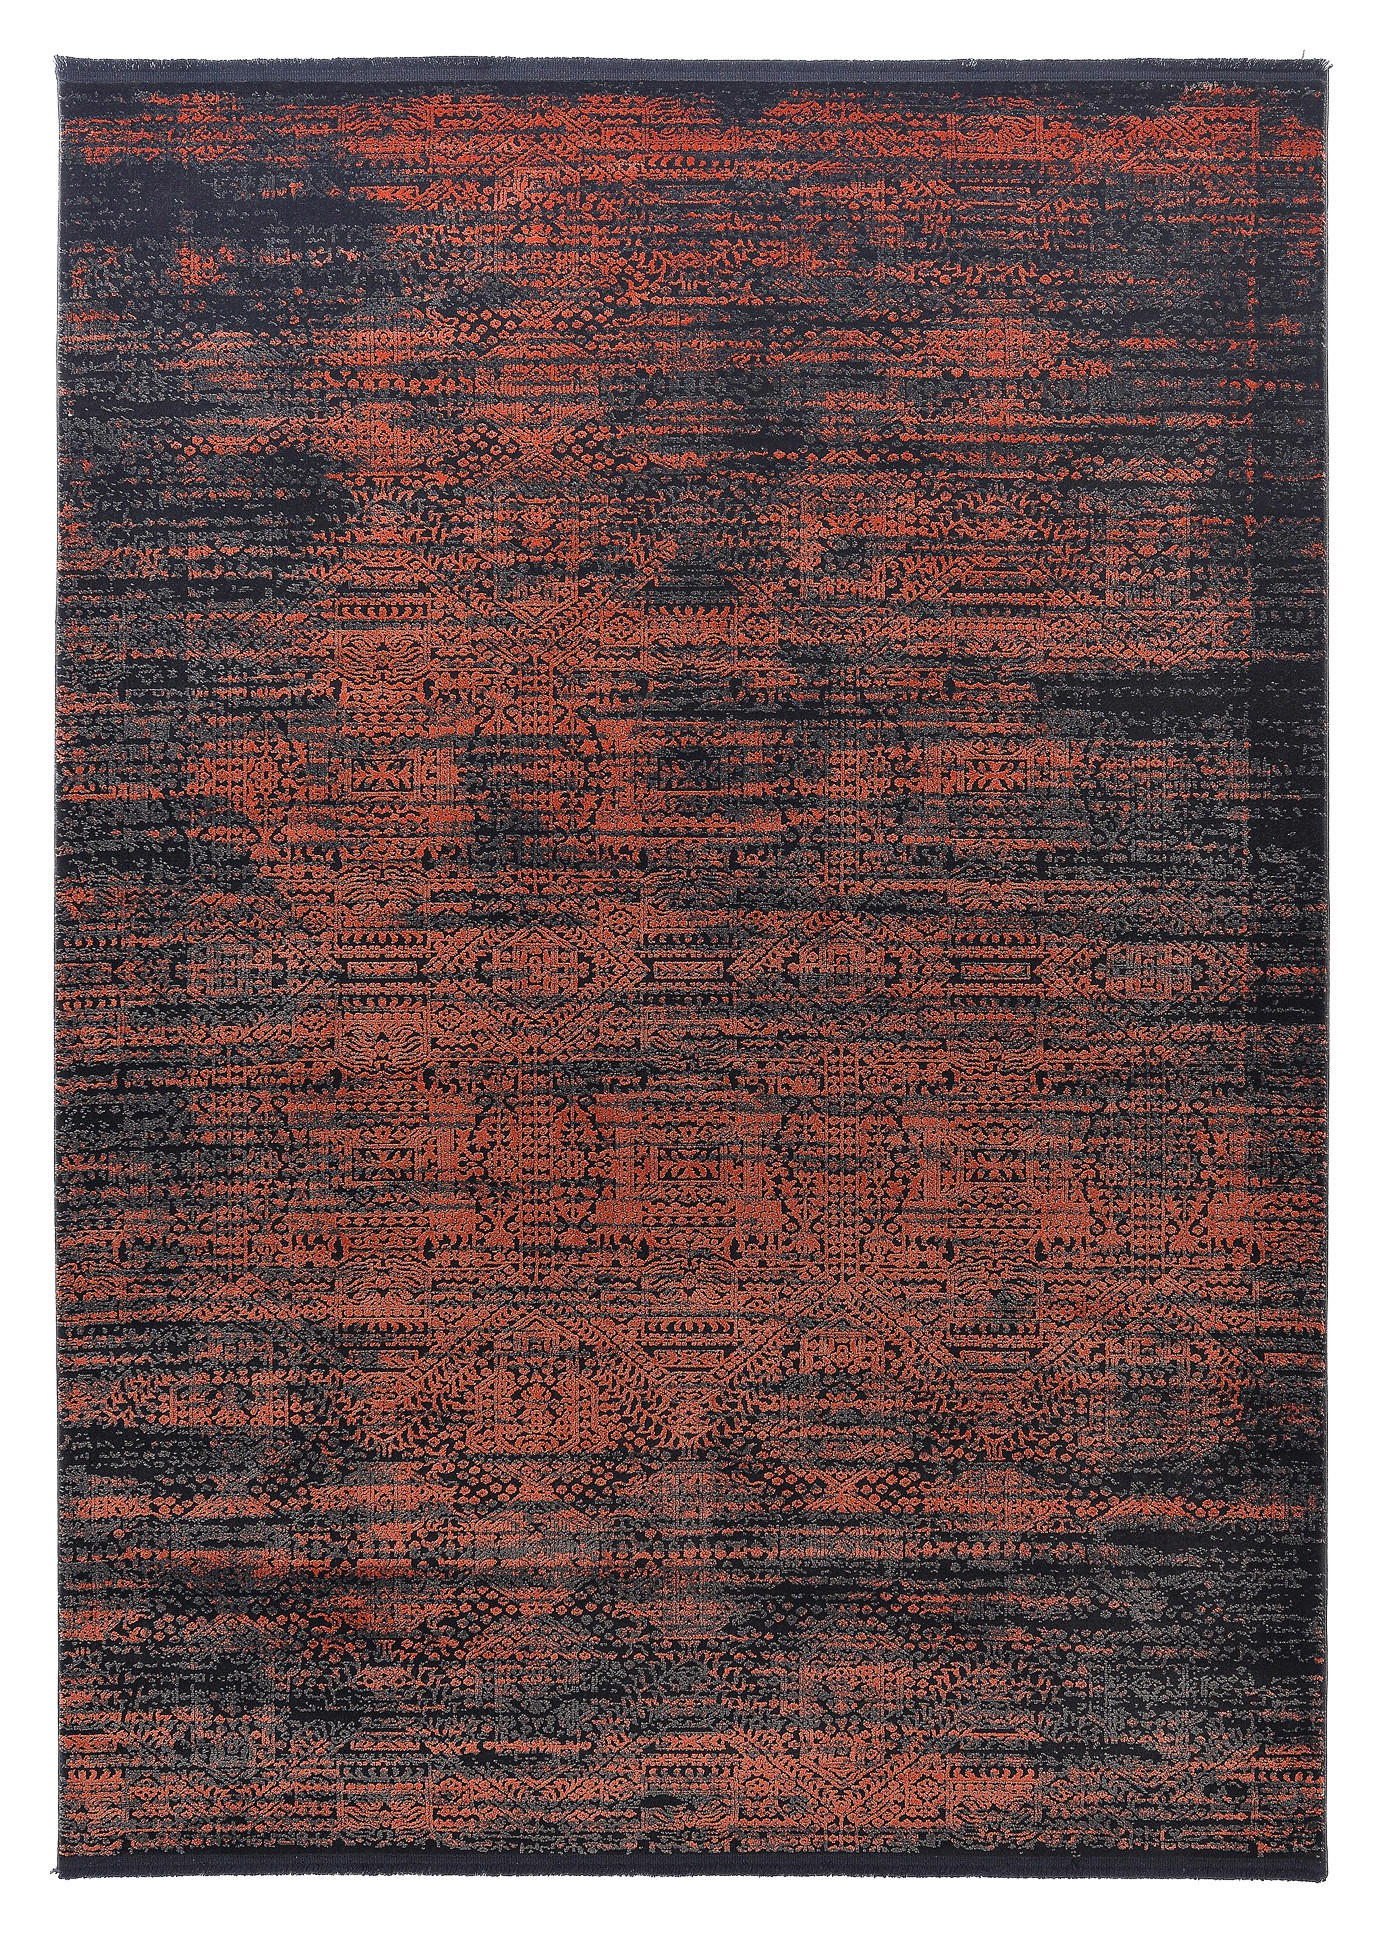 WEBTEPPICH  78/150 cm  Kupferfarben   - Kupferfarben, Design, Textil (78/150cm) - Dieter Knoll